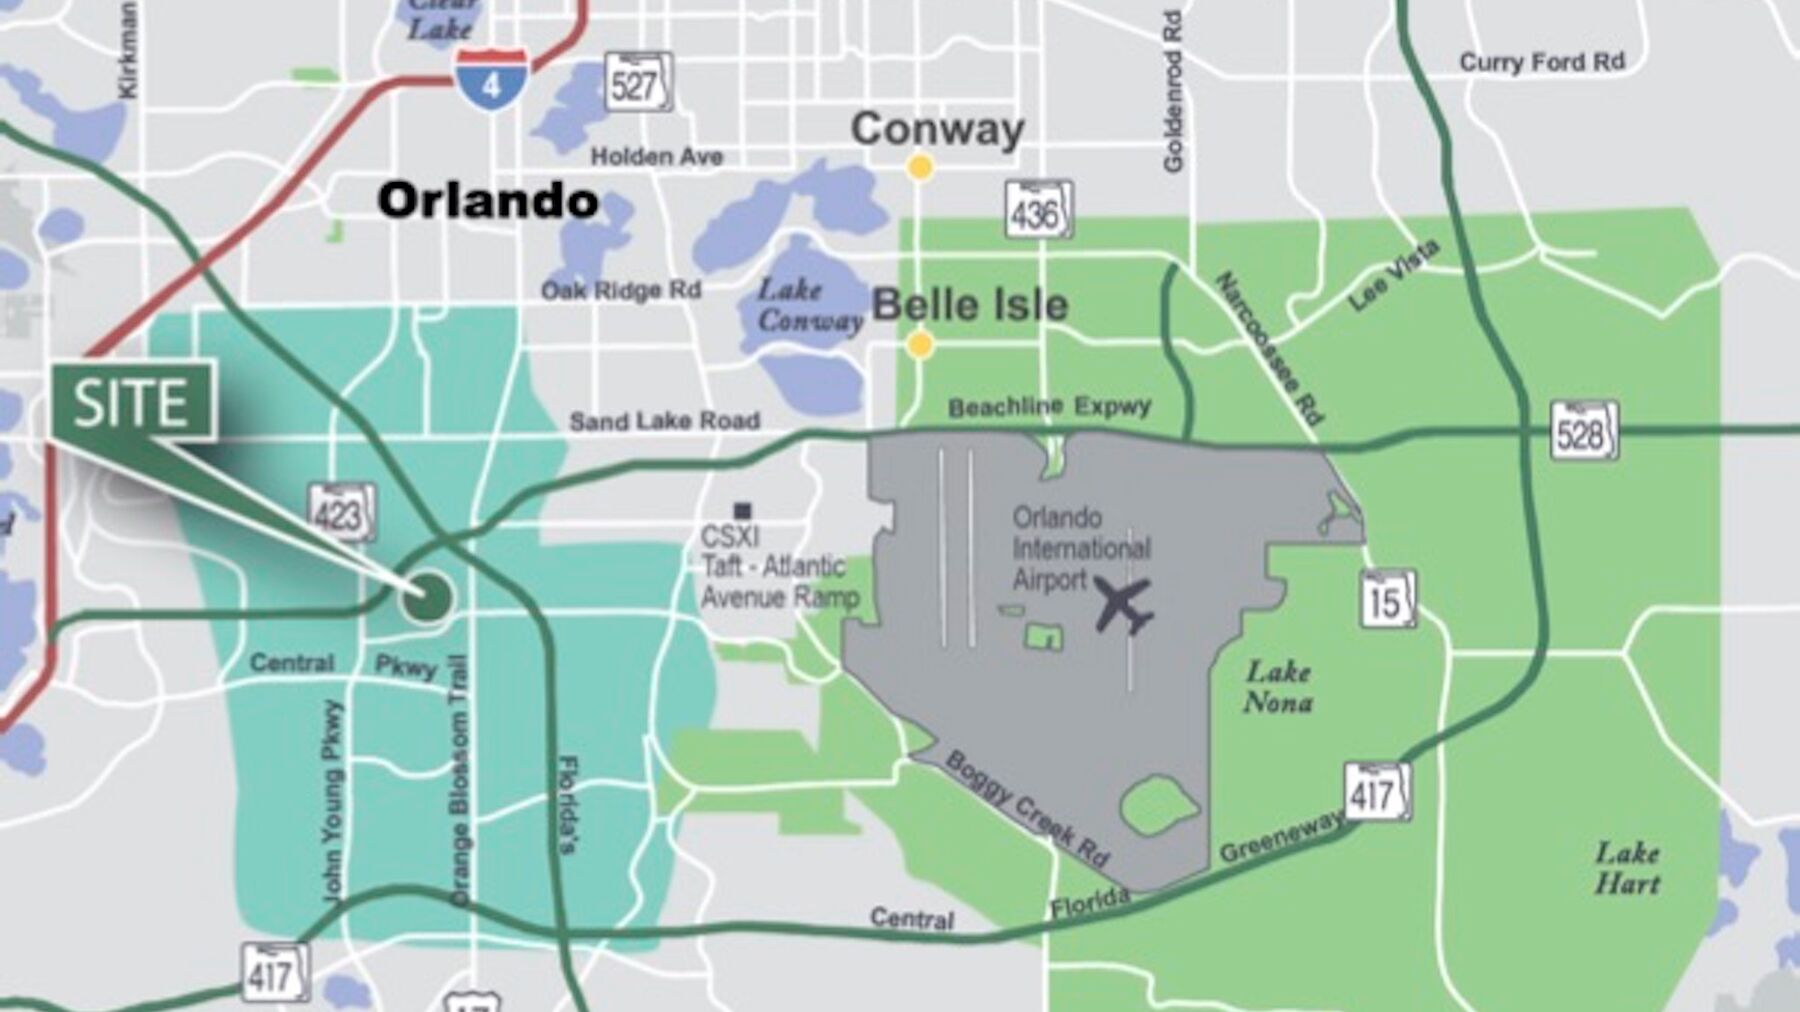 DPM-Orlando-Central-Park-South_Map.jpg